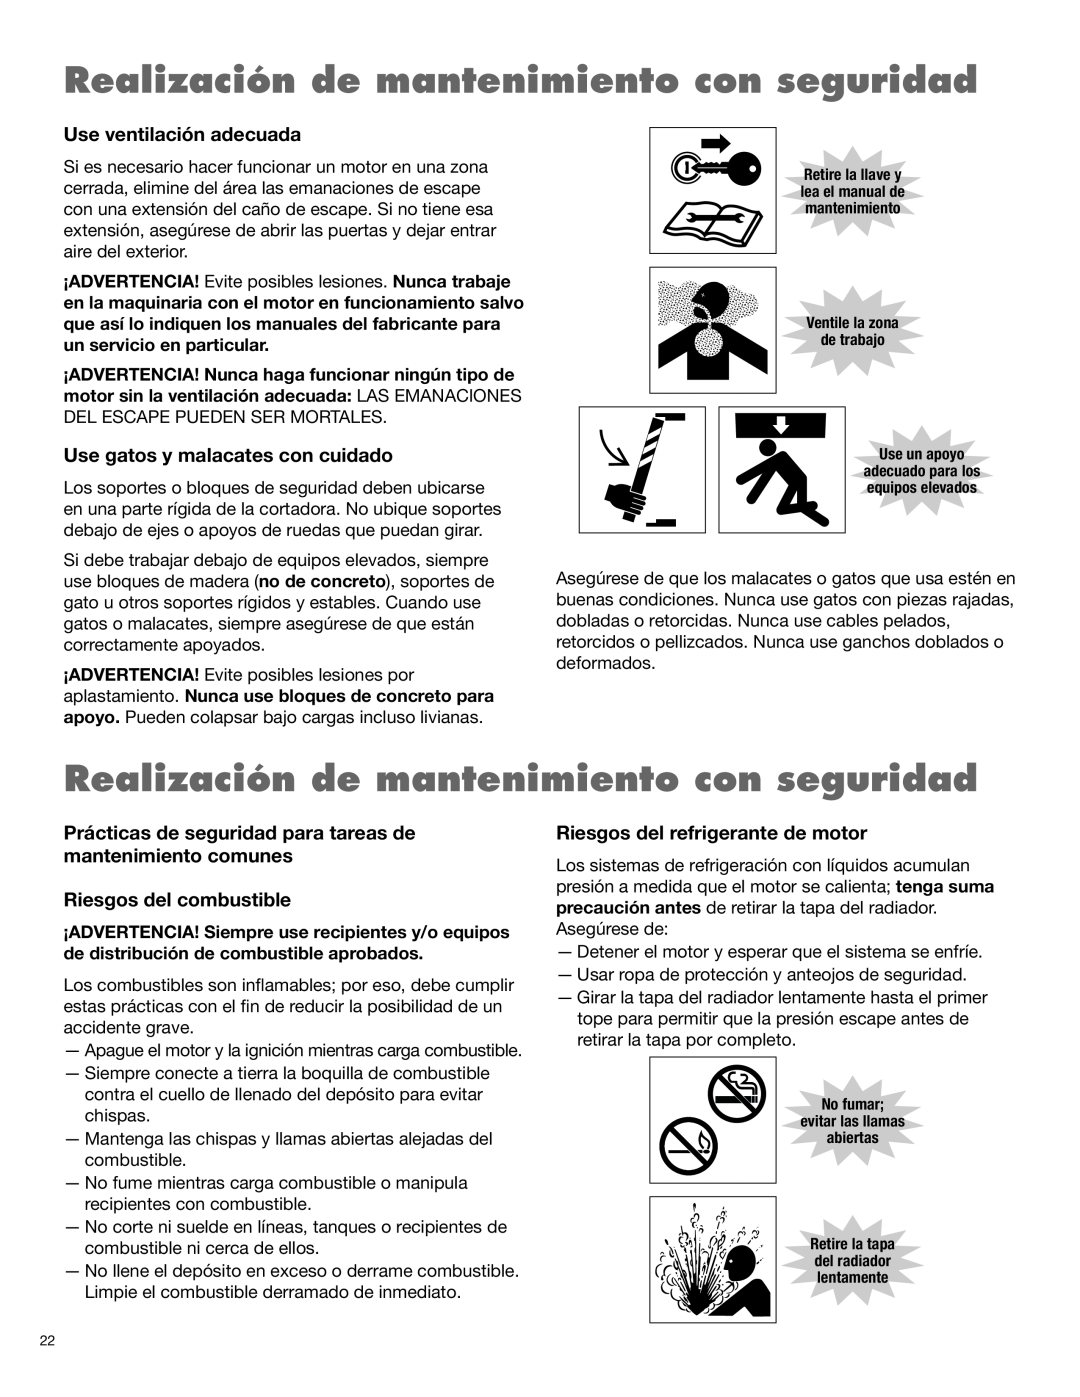 Alamo 1900 manual Realización de mantenimiento con seguridad, Use ventilación adecuada, Use gatos y malacates con cuidado 